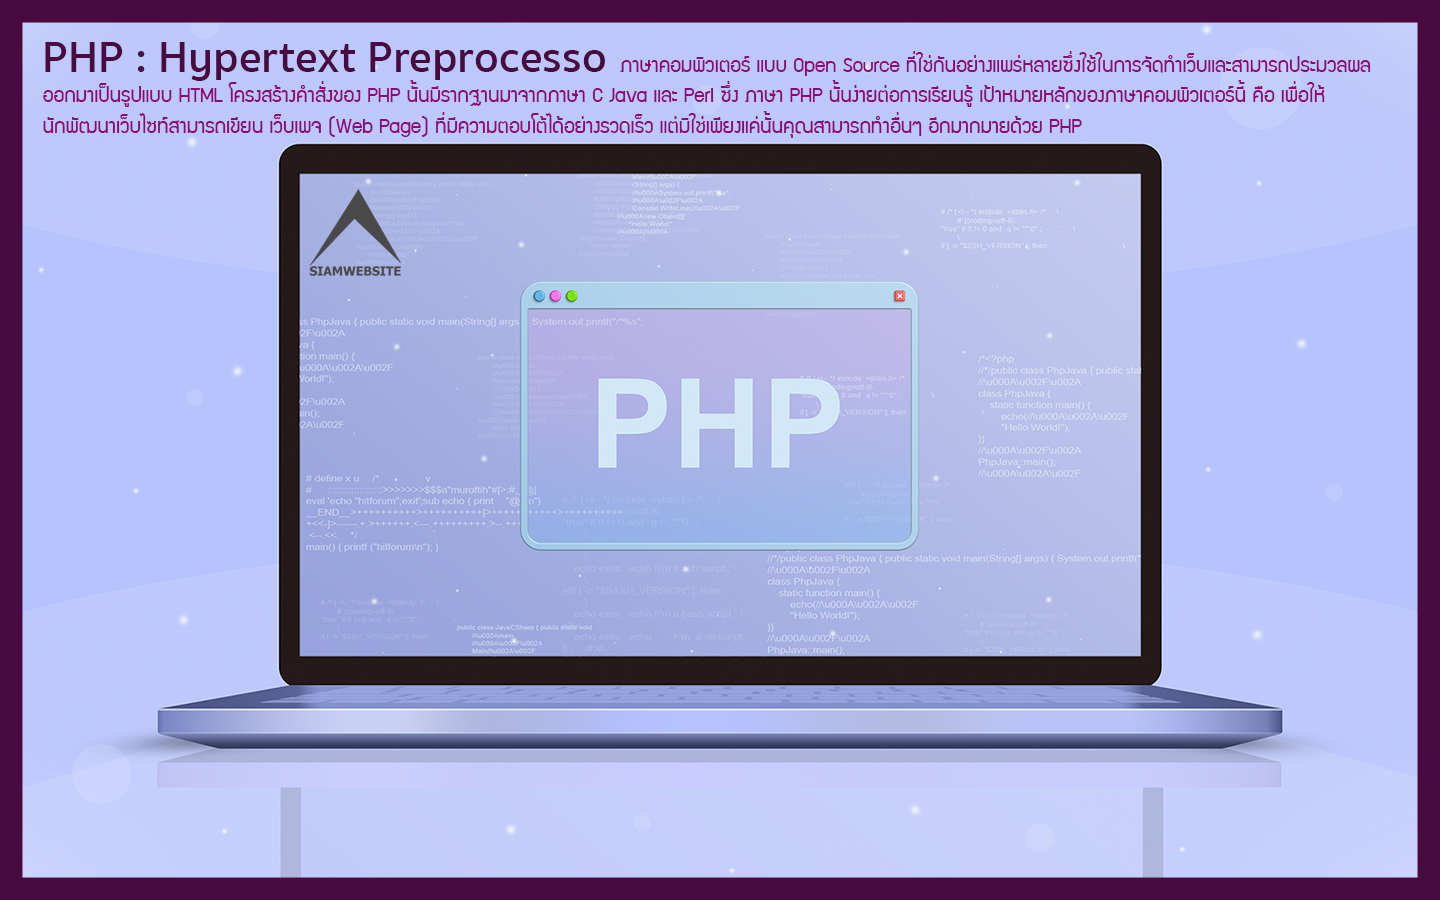 รับทําเว็บไซต์ เว็บขยายสายงาน PHP : Hypertext Preprocesso | TTT-WEBSITE 